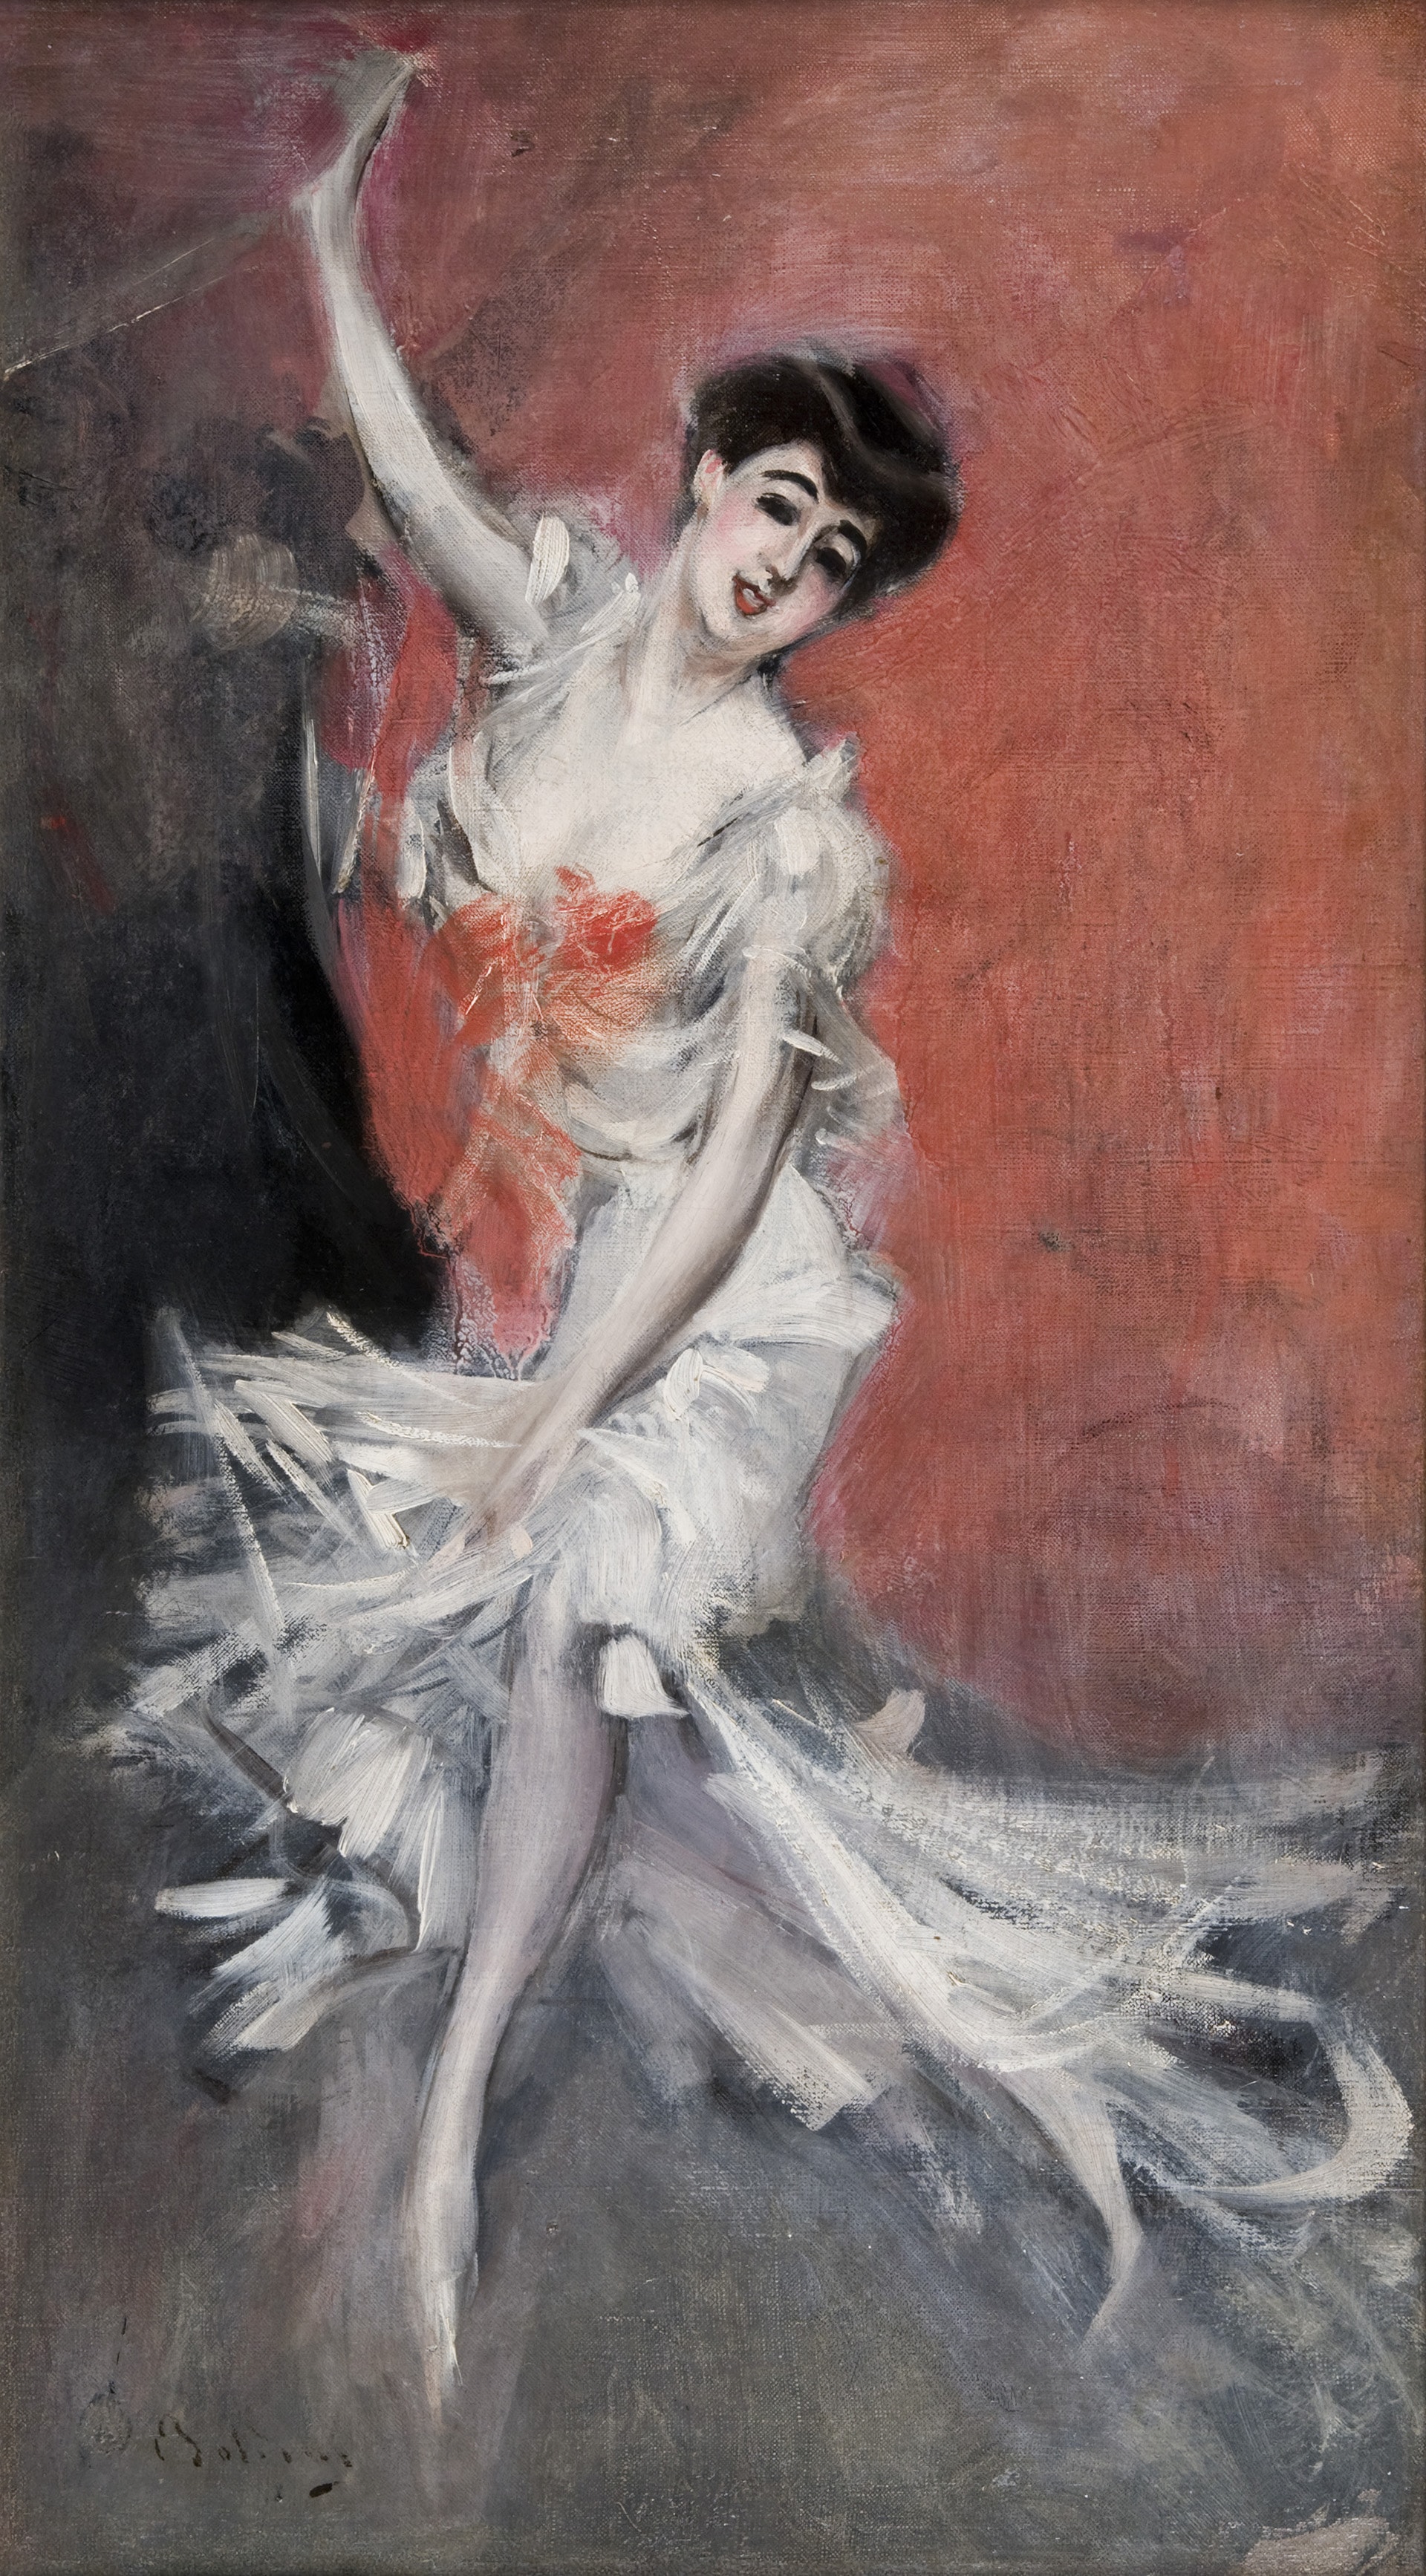 Giovanni Boldini. Ritratto di ballerina, 1900 ca. Olio su tela, 57 x 31,5 cm. Collezione privata. Courtesy Museo Archives Giovanni Boldini Macchiaioli